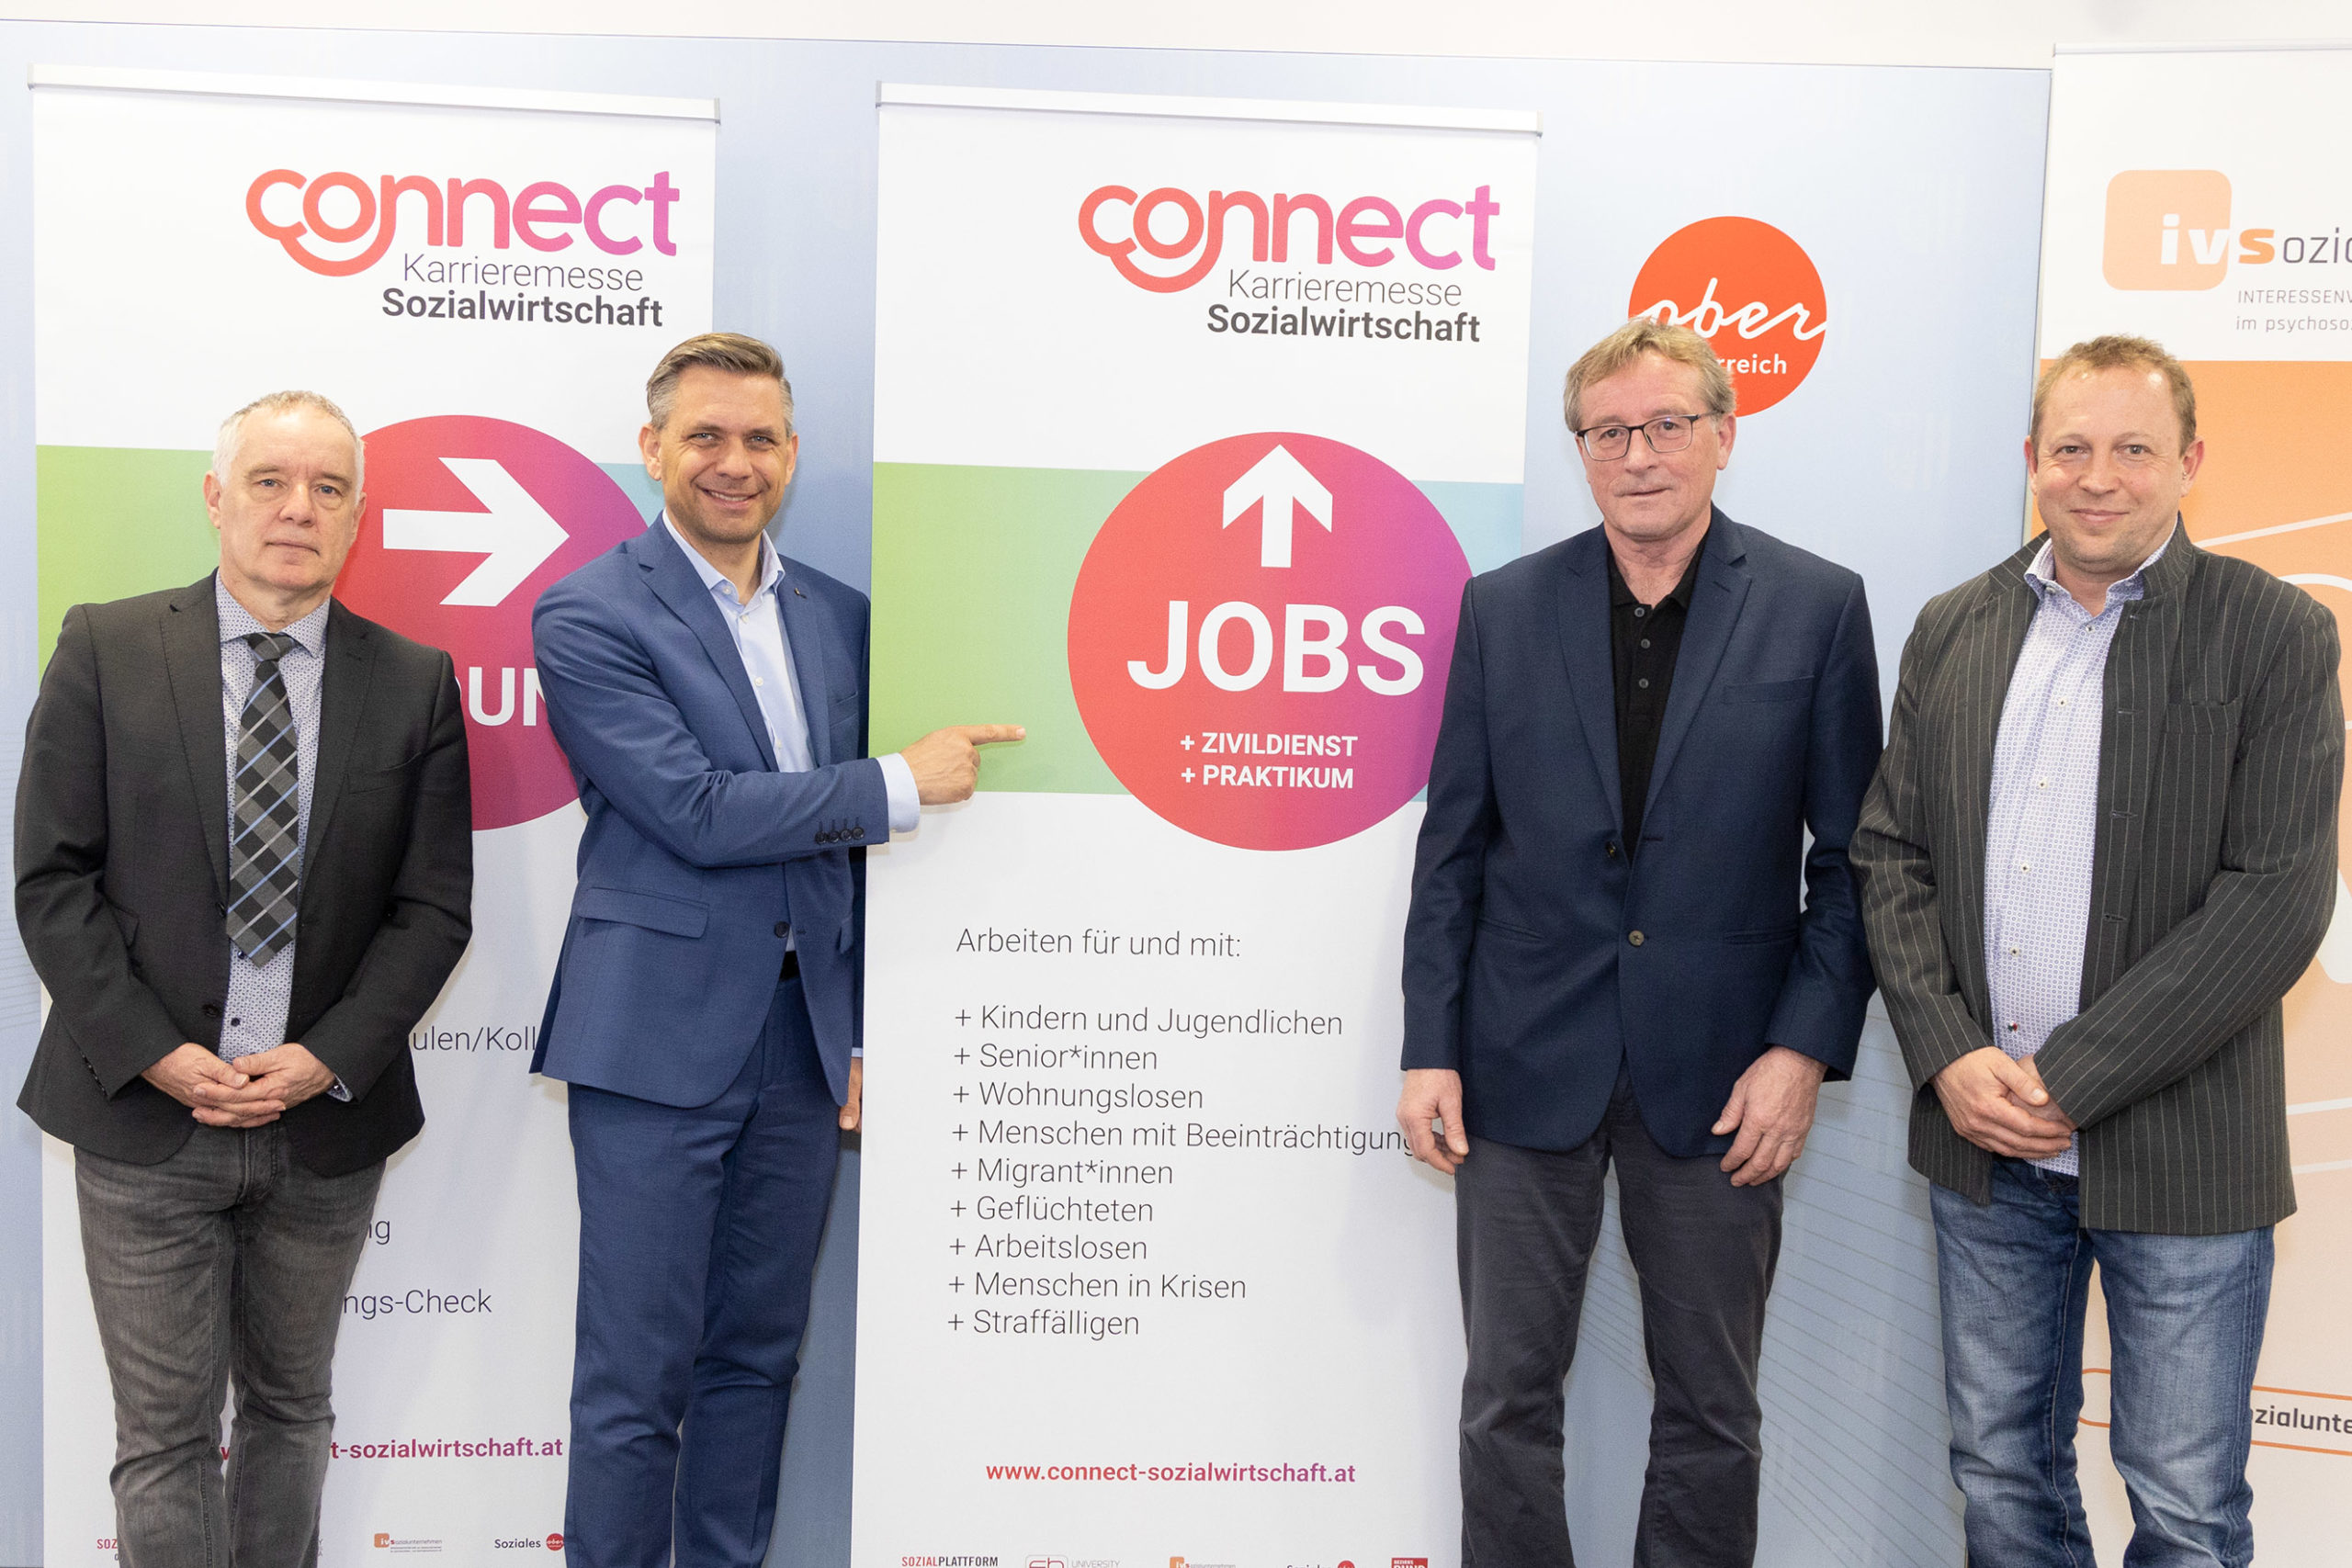 Connect Karrieremesse – Oberösterreich braucht eine starke Messe für Sozialwirtschaft